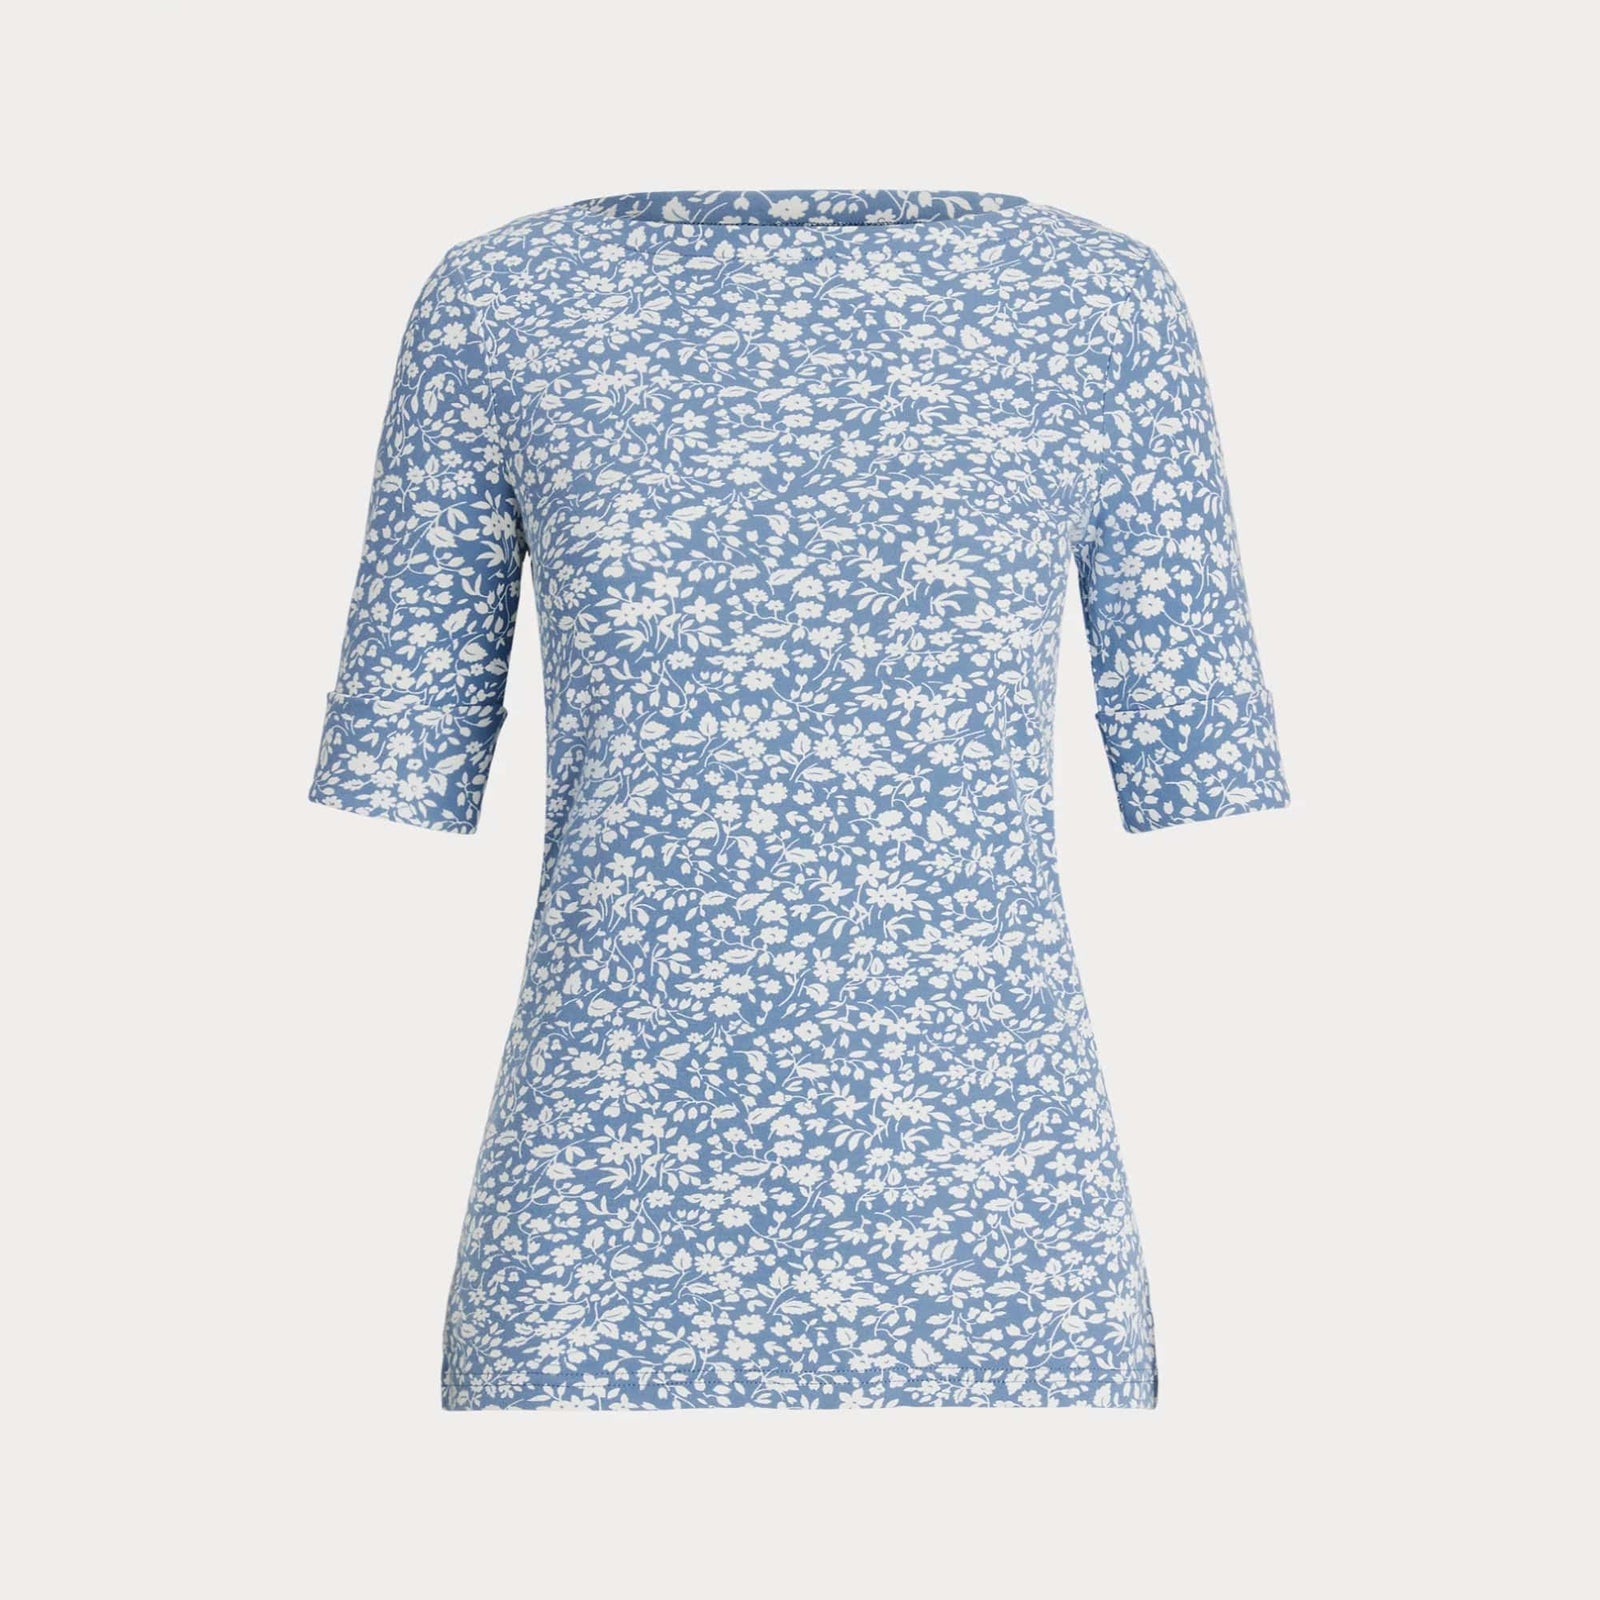 Lauren Ralph Lauren Floral Stretch Cotton Boatneck T-shirt in Blue/Cream